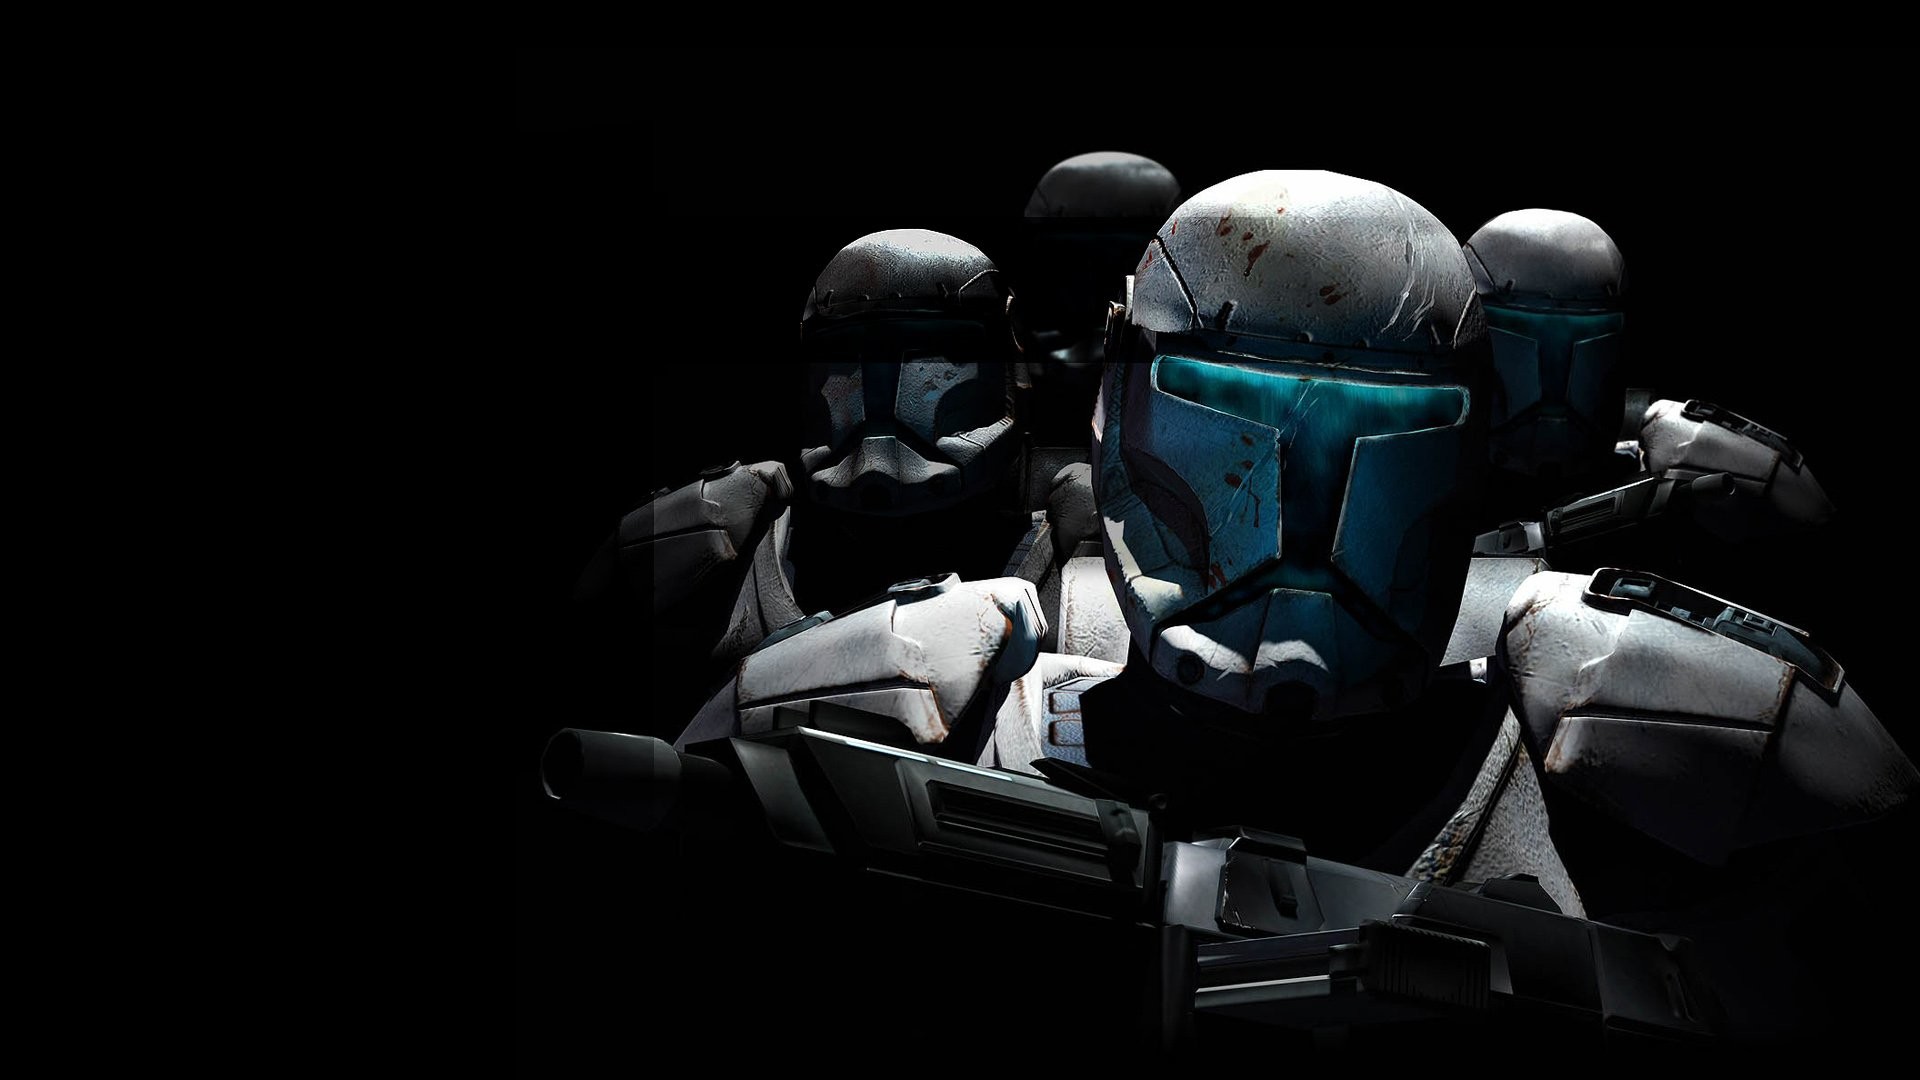 1920x1080 Clone Trooper. SHARE. TAGS: Clone Trooper Star Wars